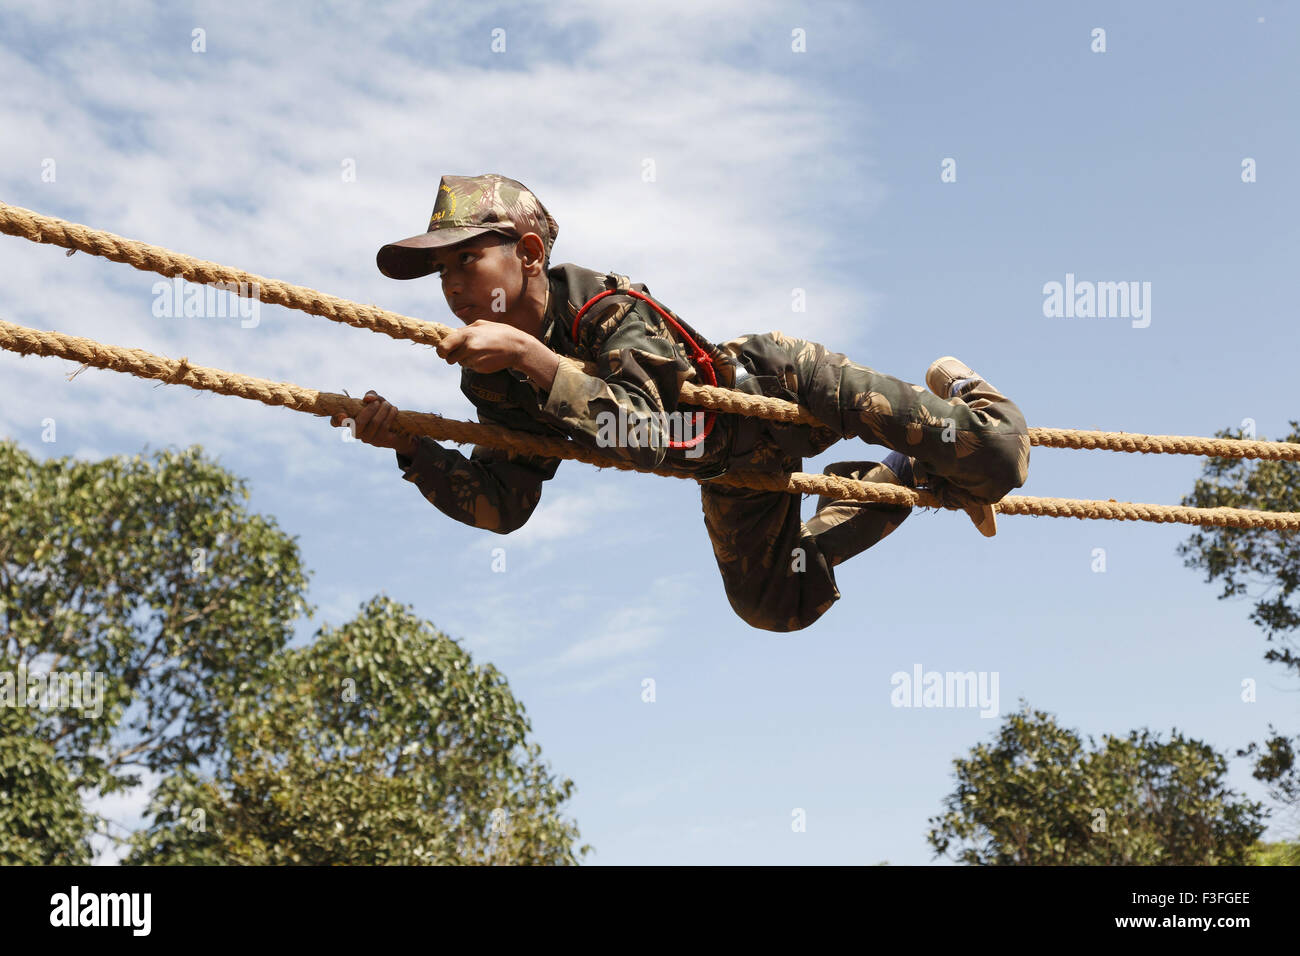 La formation des cadets ; obstacles Commando traversant la distance par l'exploration sur l'école militaire ; corde ; Amboli Sindhudurga Banque D'Images